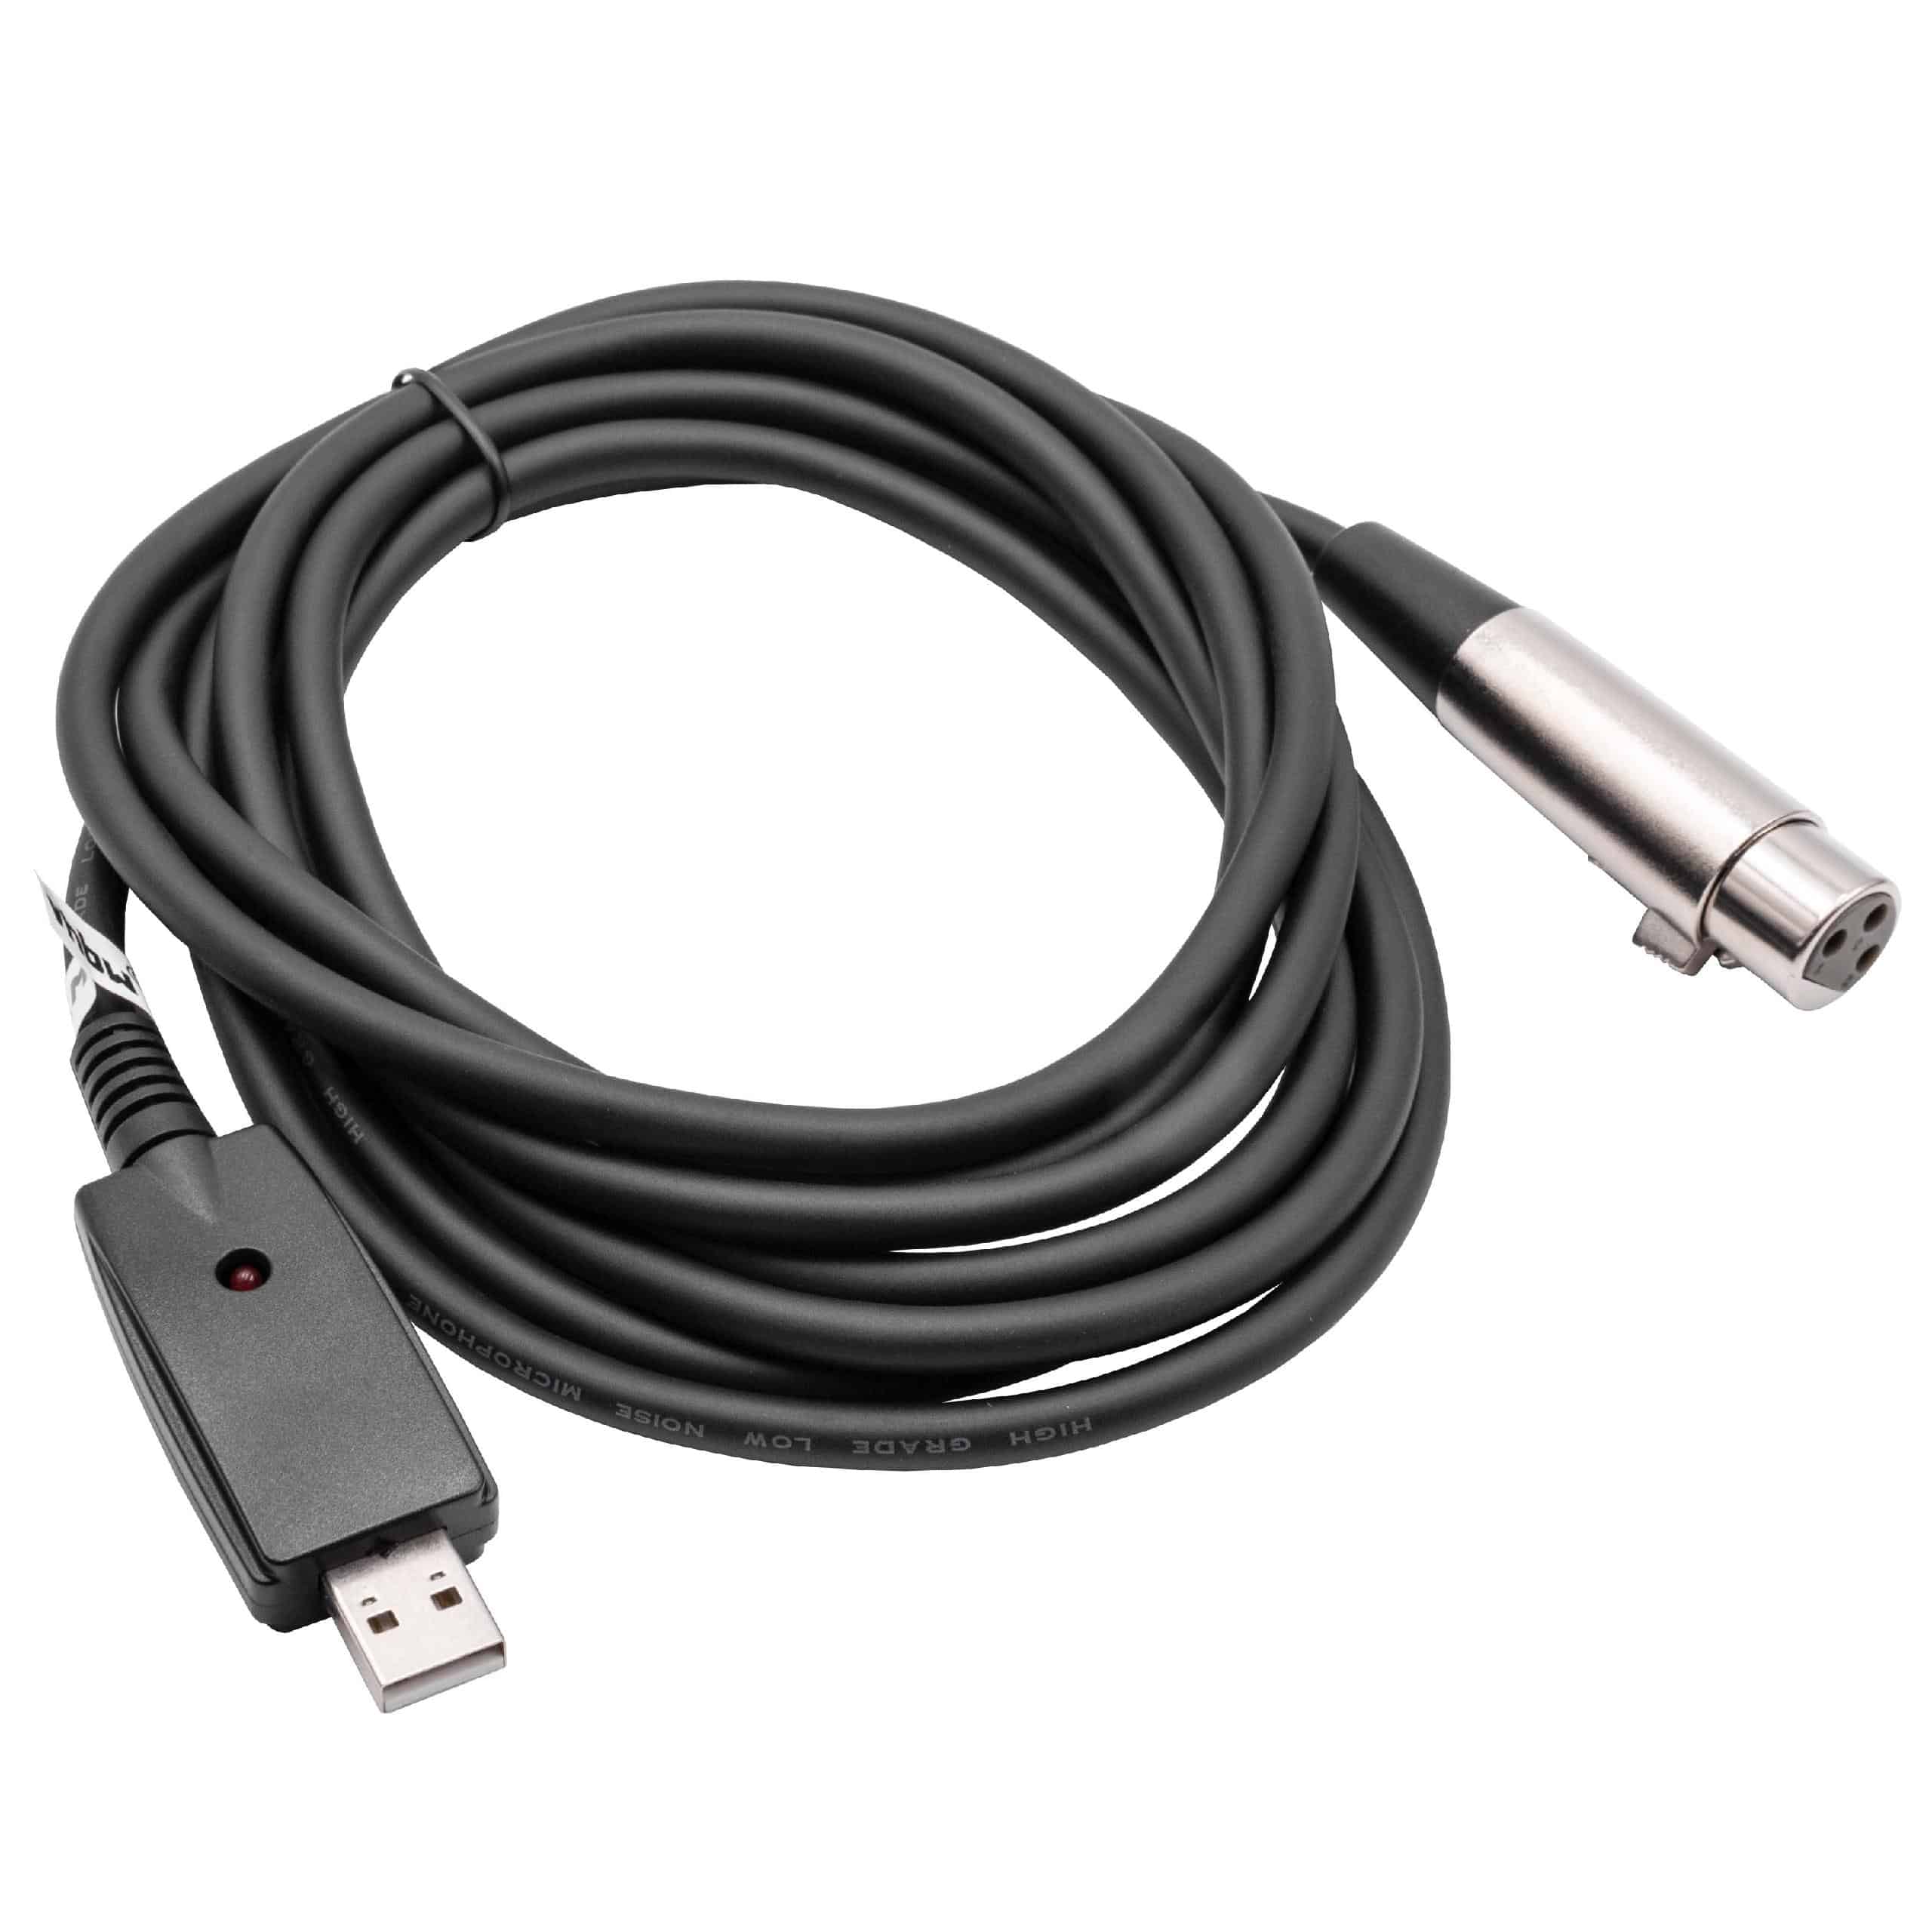 vhbw Cable adaptador USB 2.0 a clavija hembra XLR 3 pines - 2,8 m Cable de audio, cable de micrófono, cable US